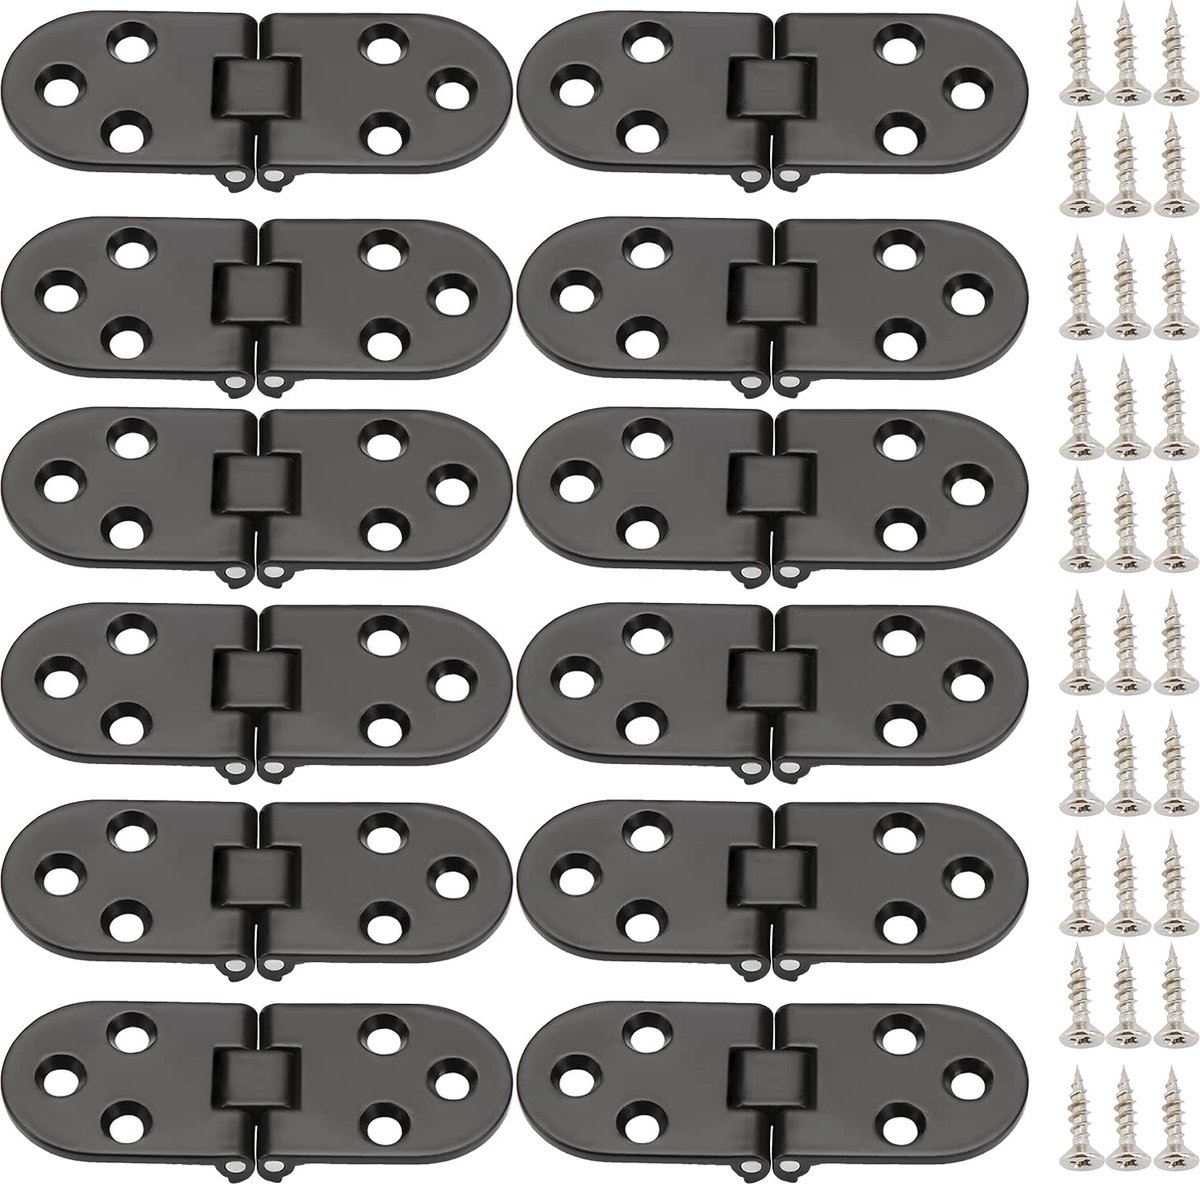 Booramy 12 stuks vouwscharnier 180 graden zinklegering ronde rand scharnieren meubelscharnieren voor klaptafel kastdeur meubelen (zwart)